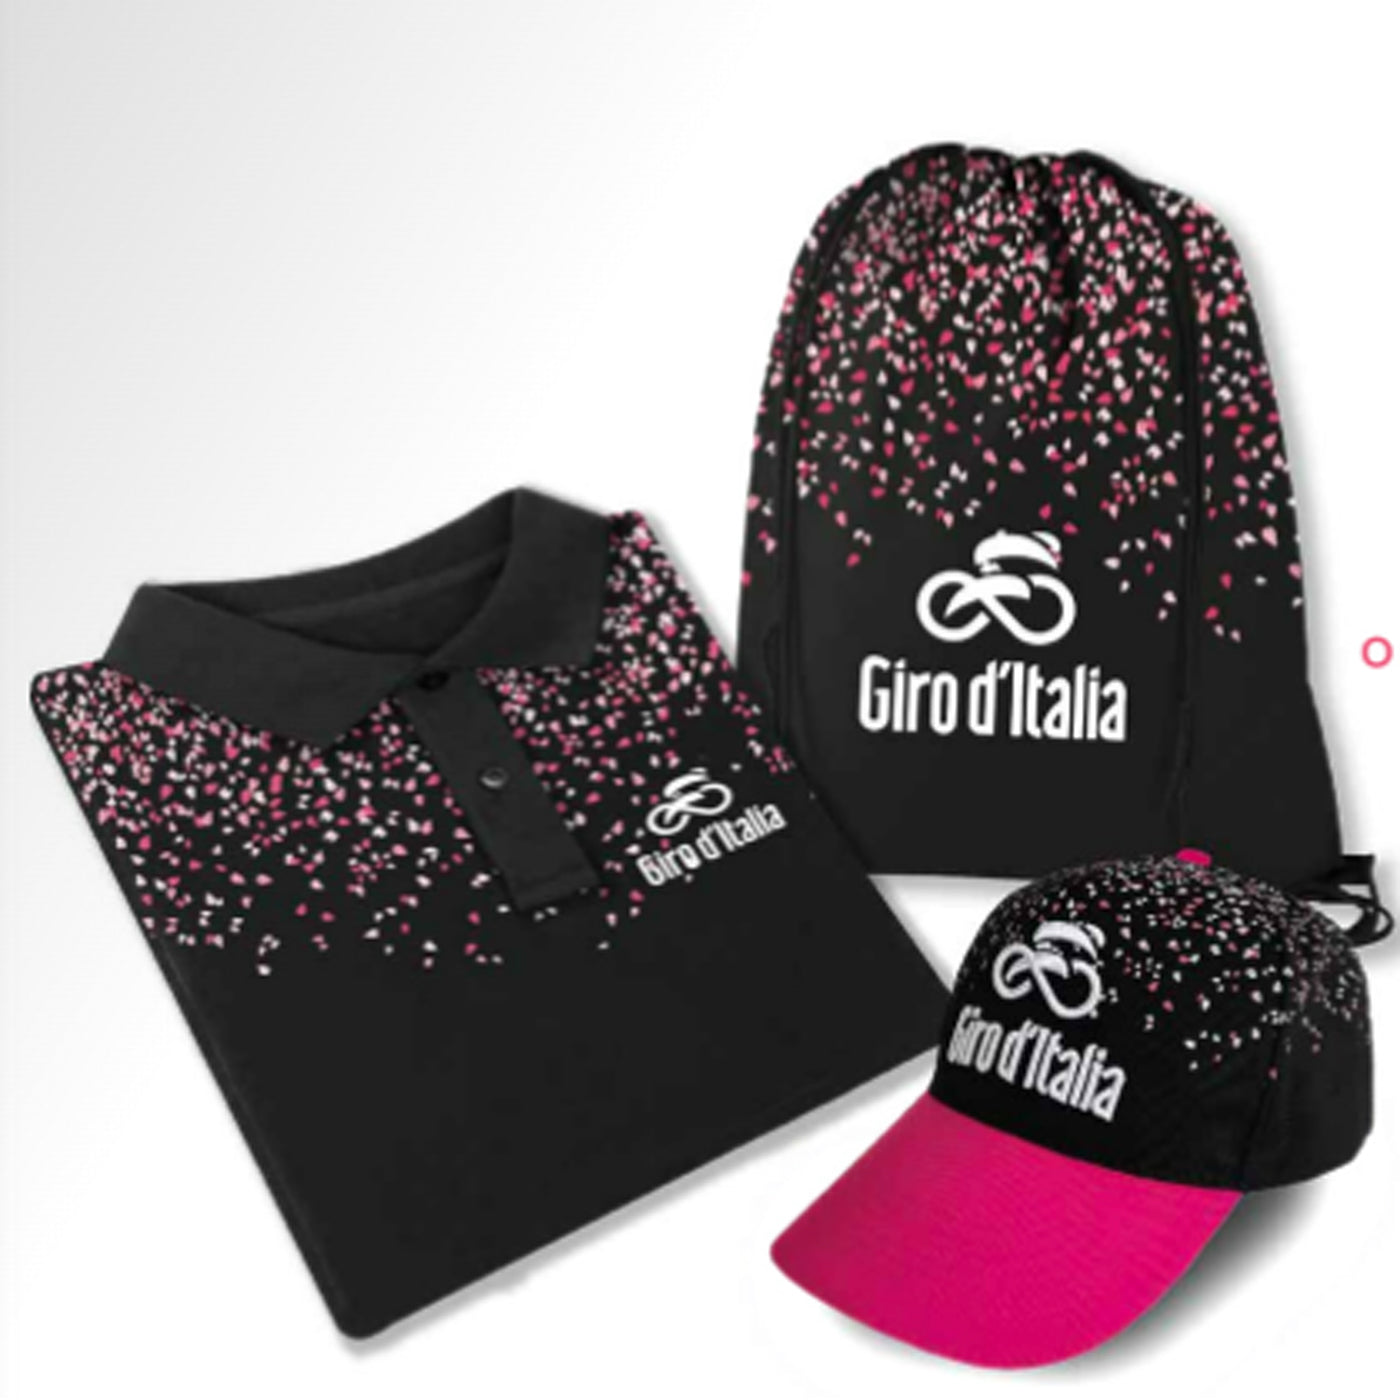 Polo kit Giro d'italia 2023 - Black